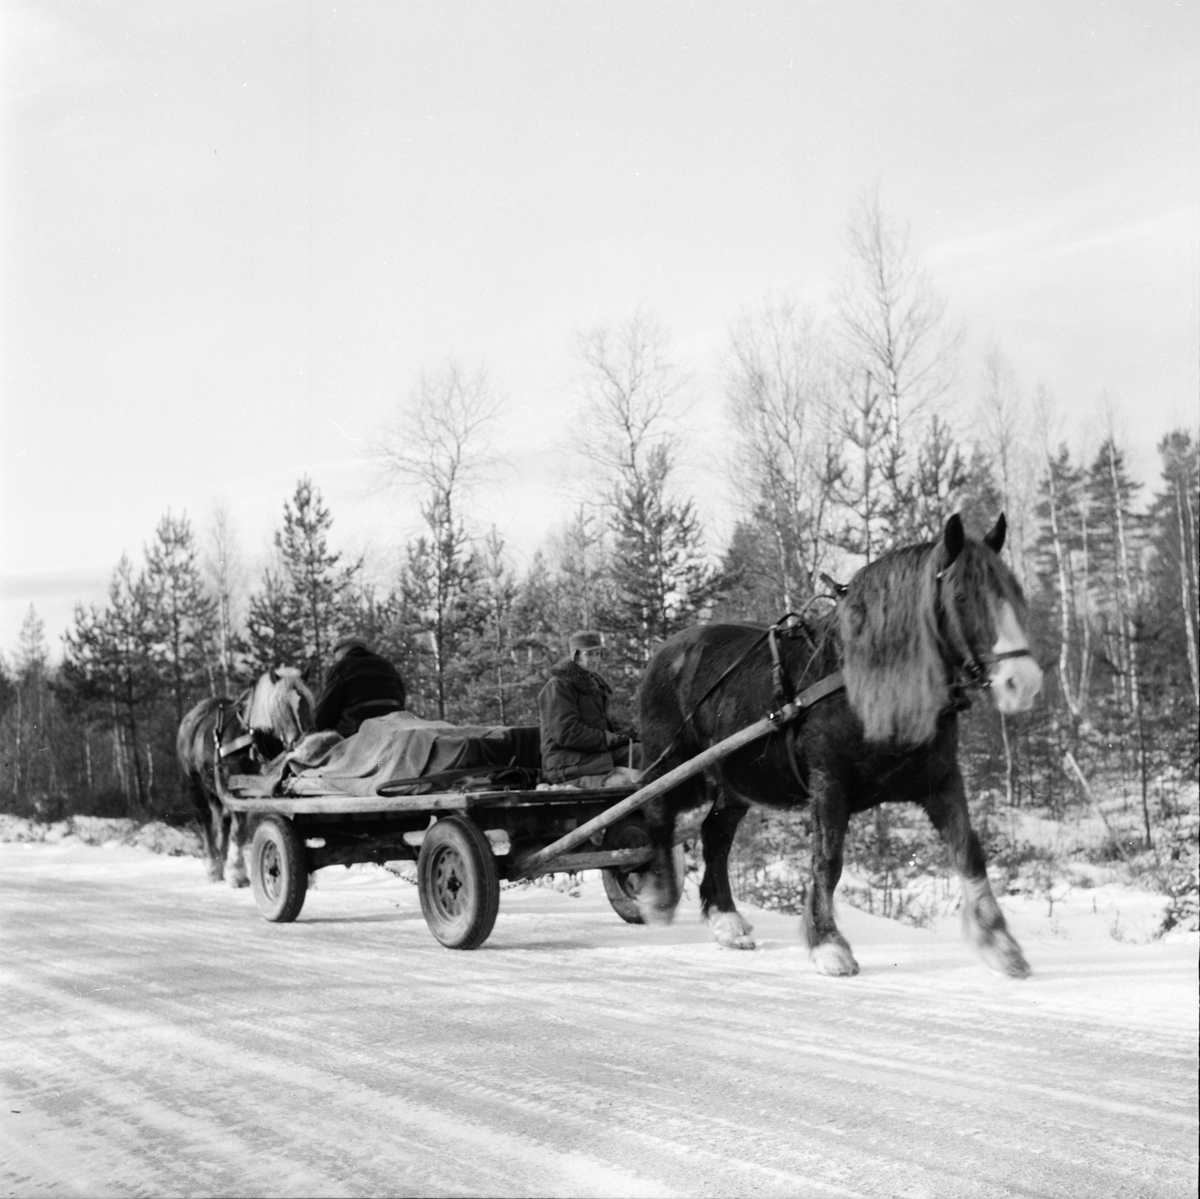 Skolbarn, affären, skogskörare i Skräddrabo.
18/1 1957
